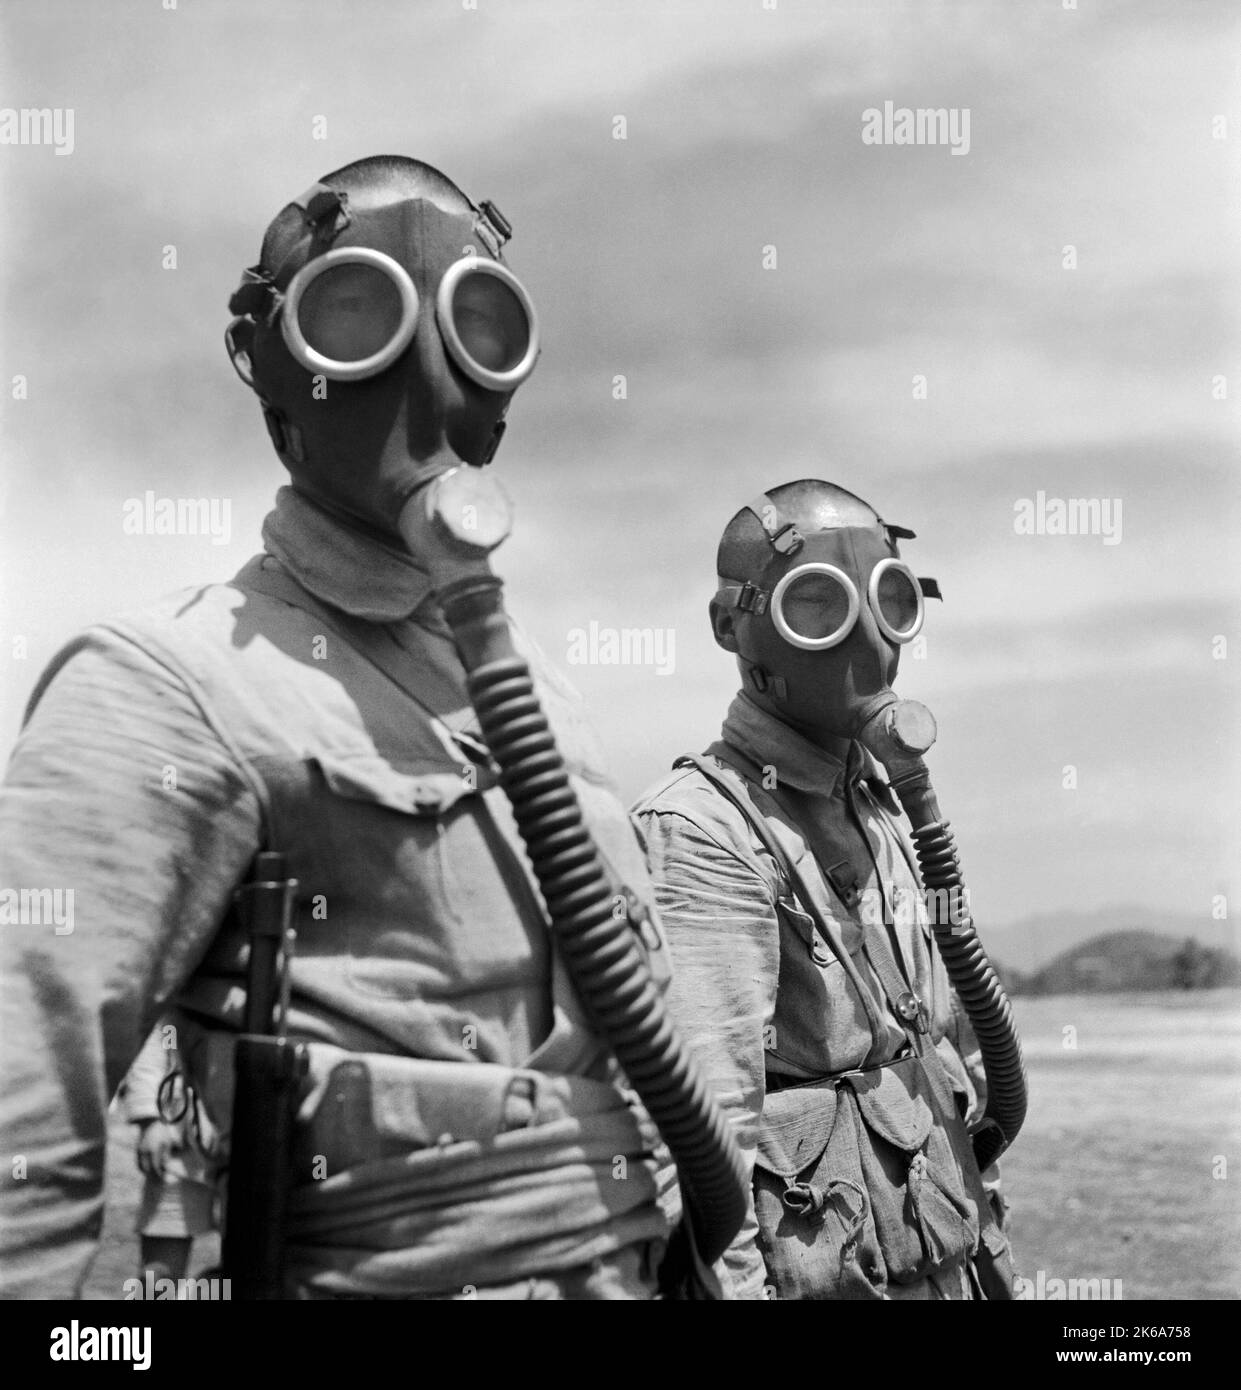 Soldats chinois portant des masques à gaz pendant la Seconde Guerre mondiale, 1944. Banque D'Images